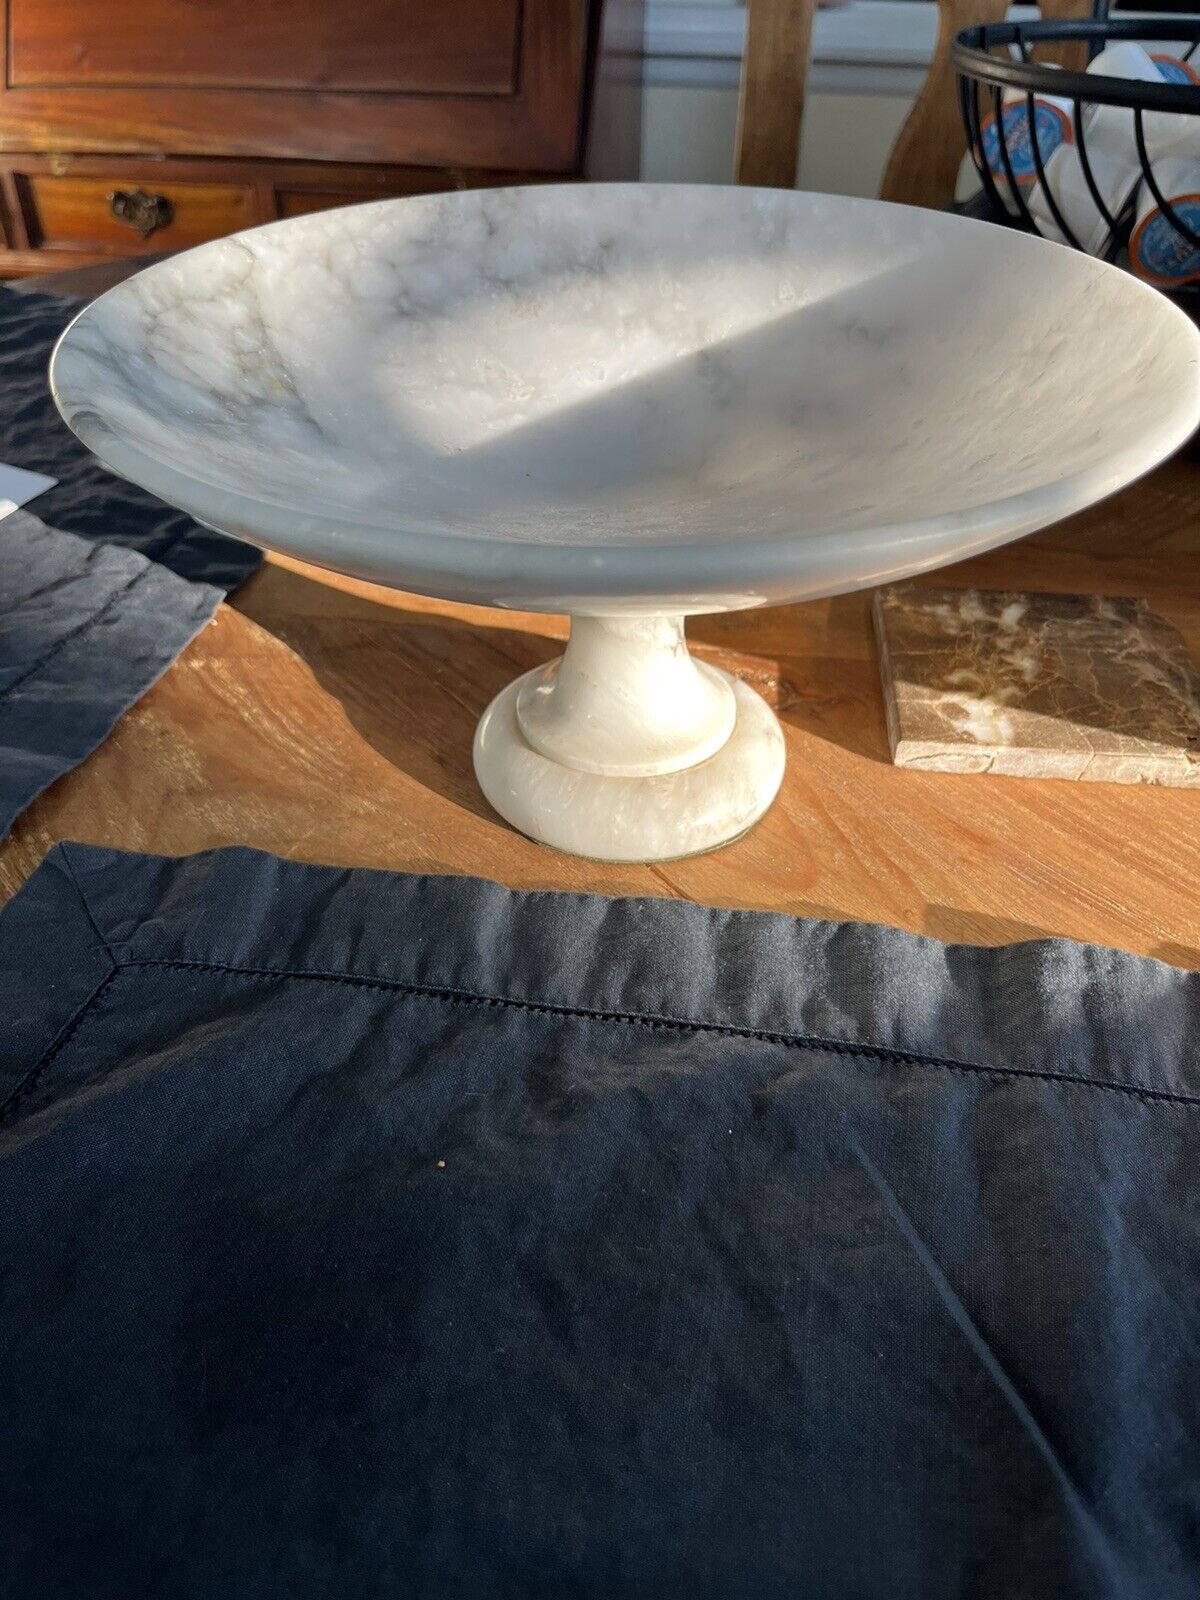 Vintage Pedestal Bowl Made Of Alabaster/Marble